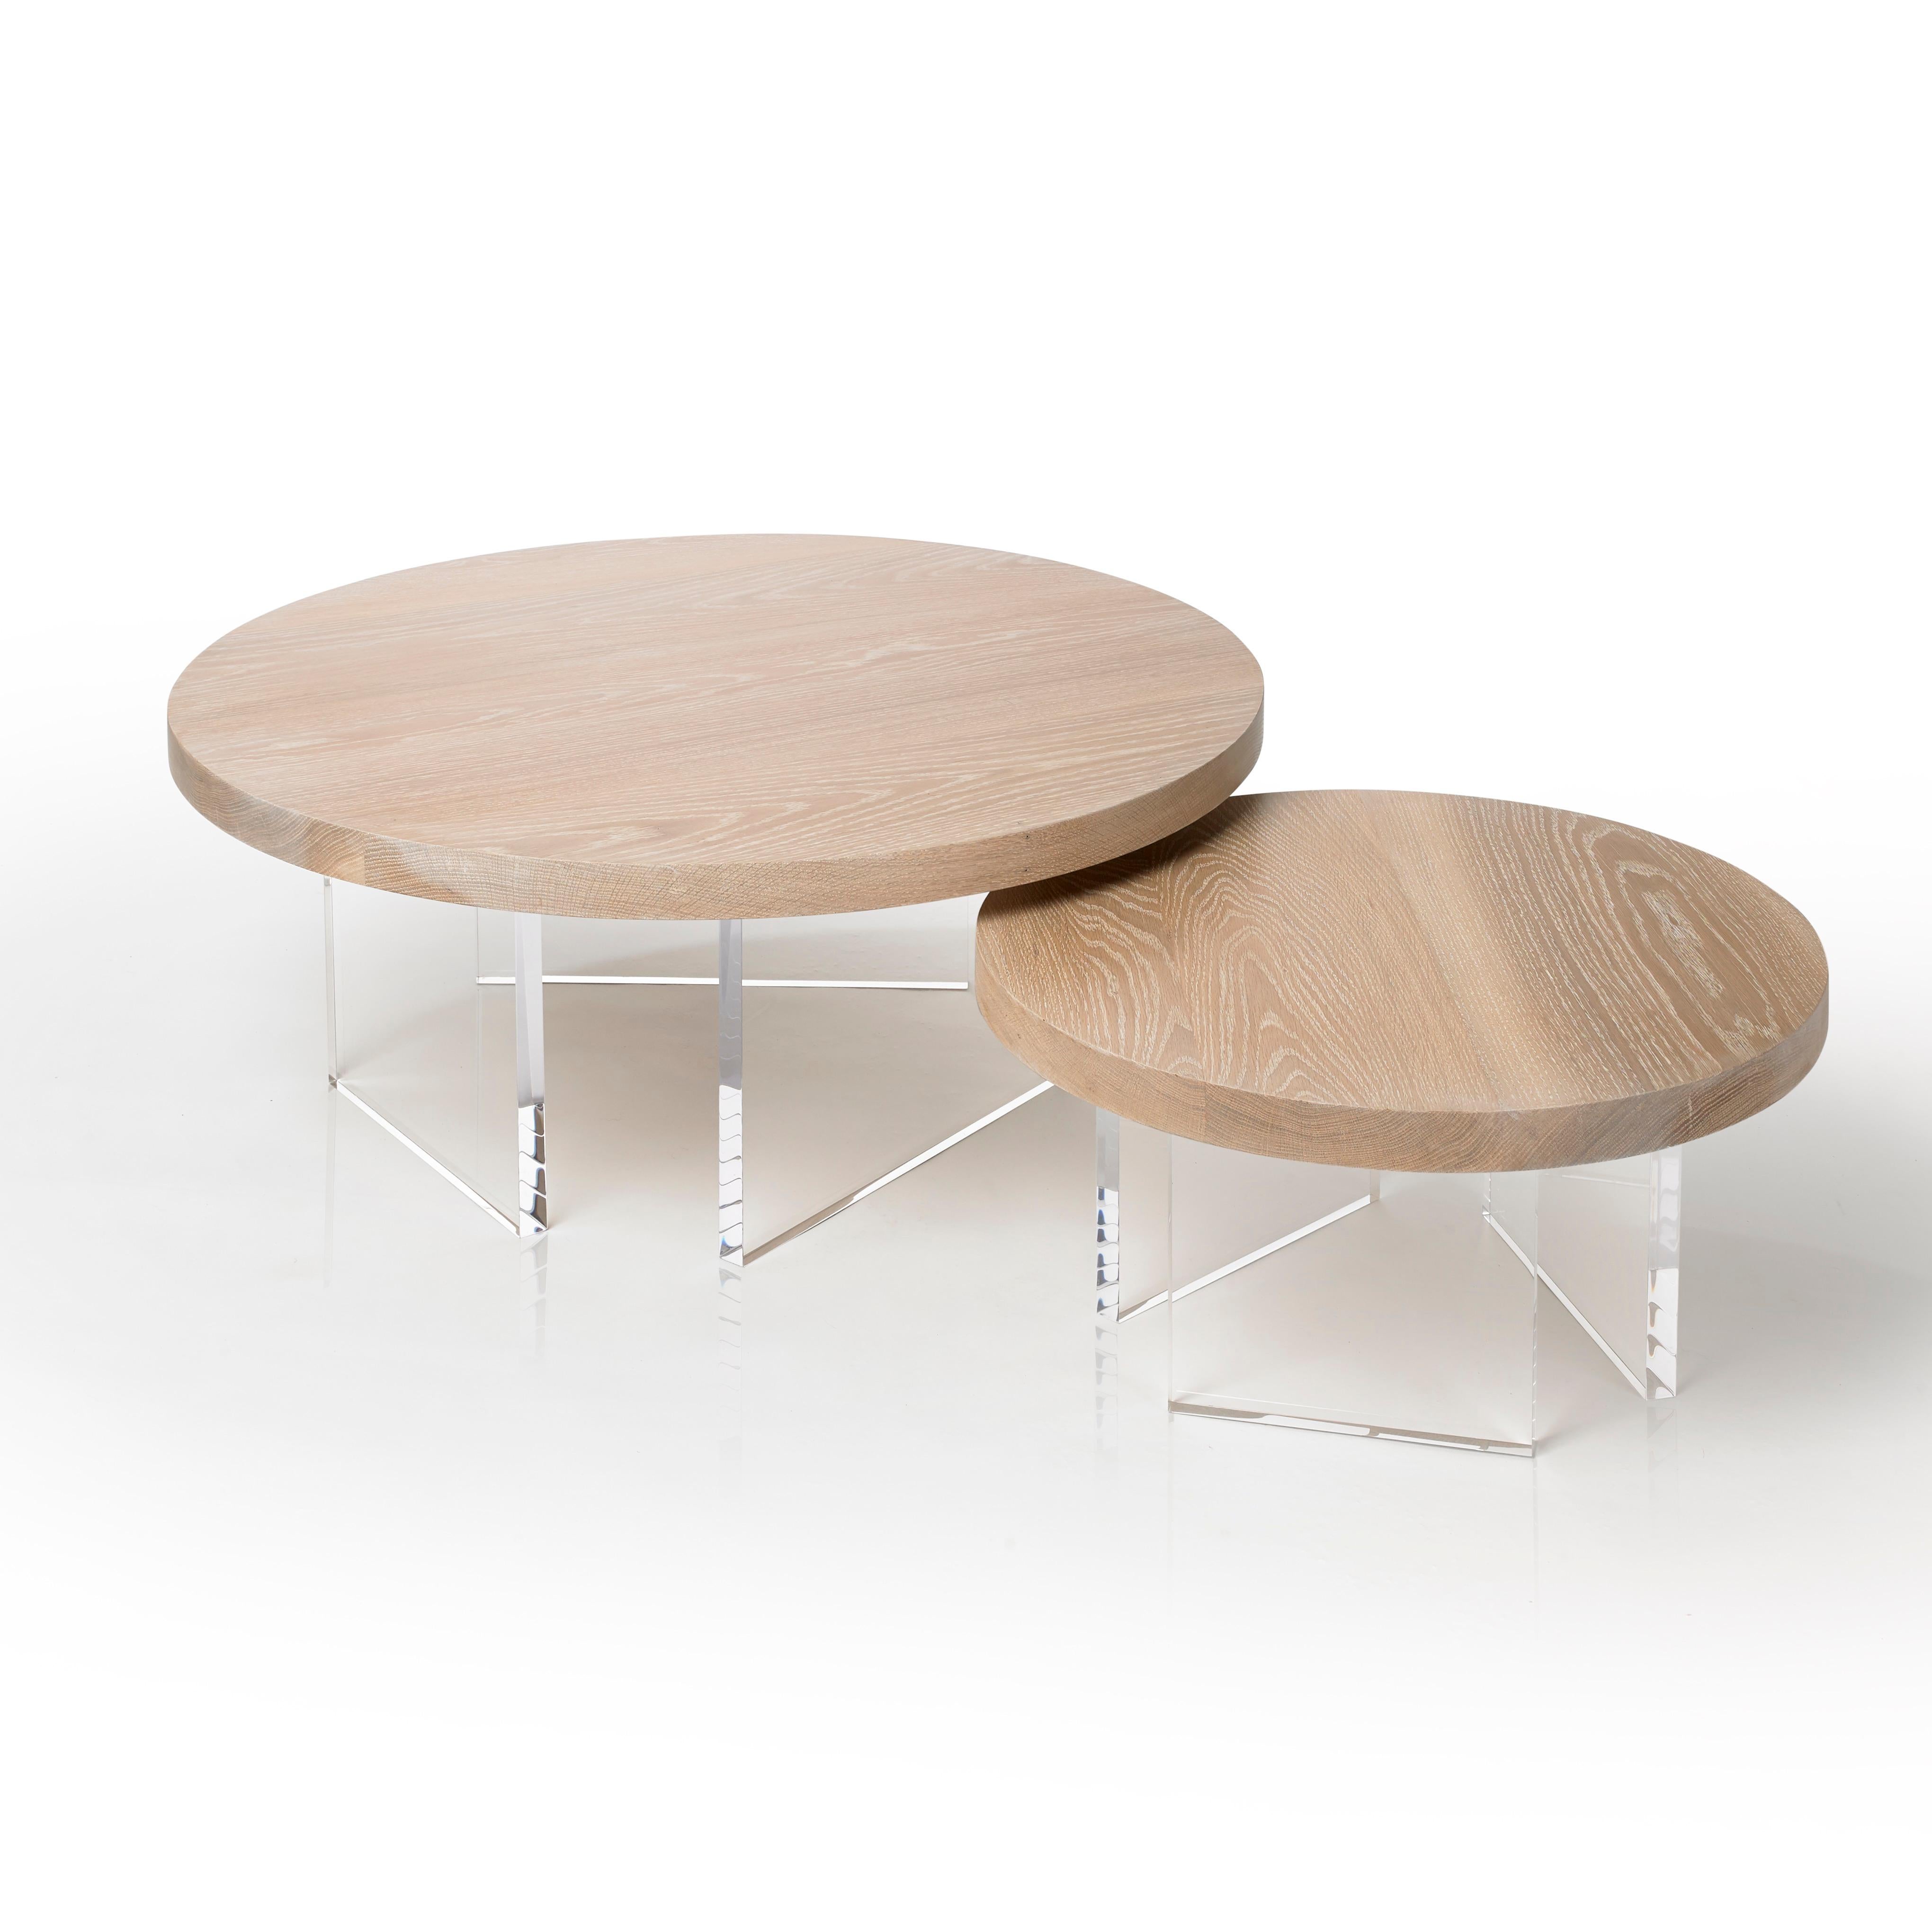 L'ensemble de table basse ronde Constantinople est une table basse moderne en bois et acrylique en chêne blanc qui offre une sensation de chaleur avec une touche de brillance. Le plateau repose sur trois pieds en acrylique d'un pouce d'épaisseur qui